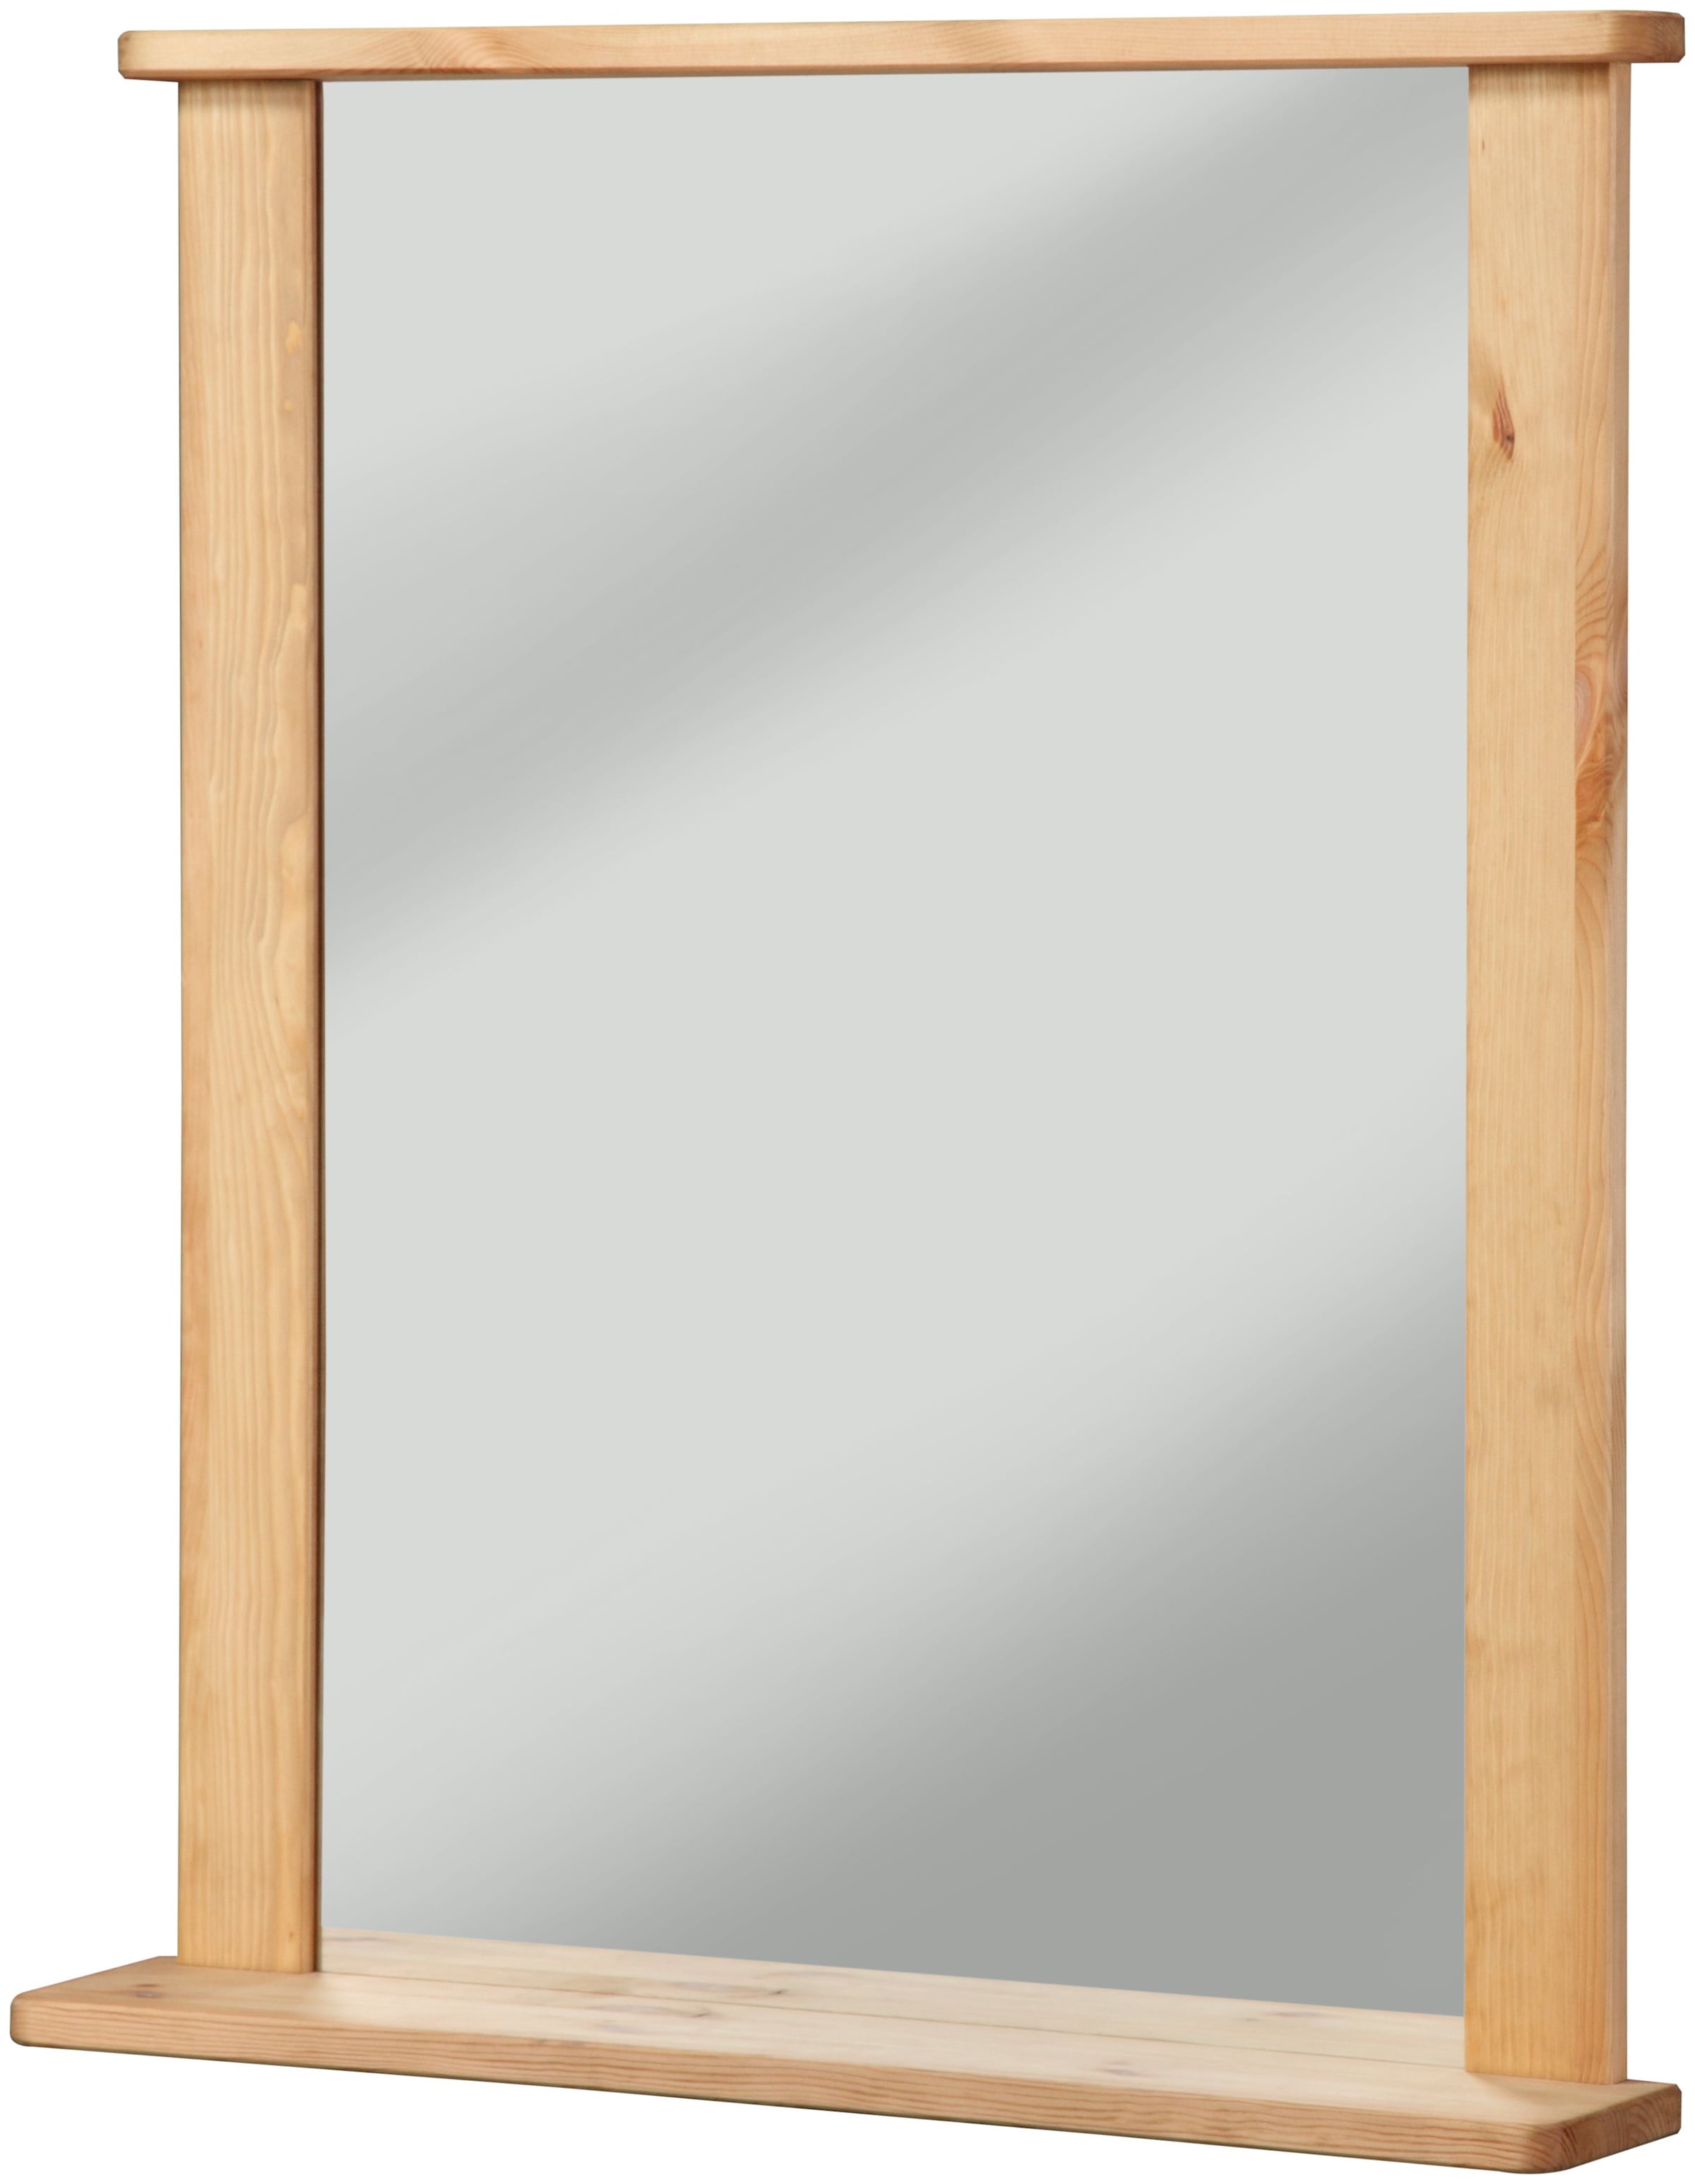 welltime Badspiegel »Sylt«, Spiegel, Breite 65 cm